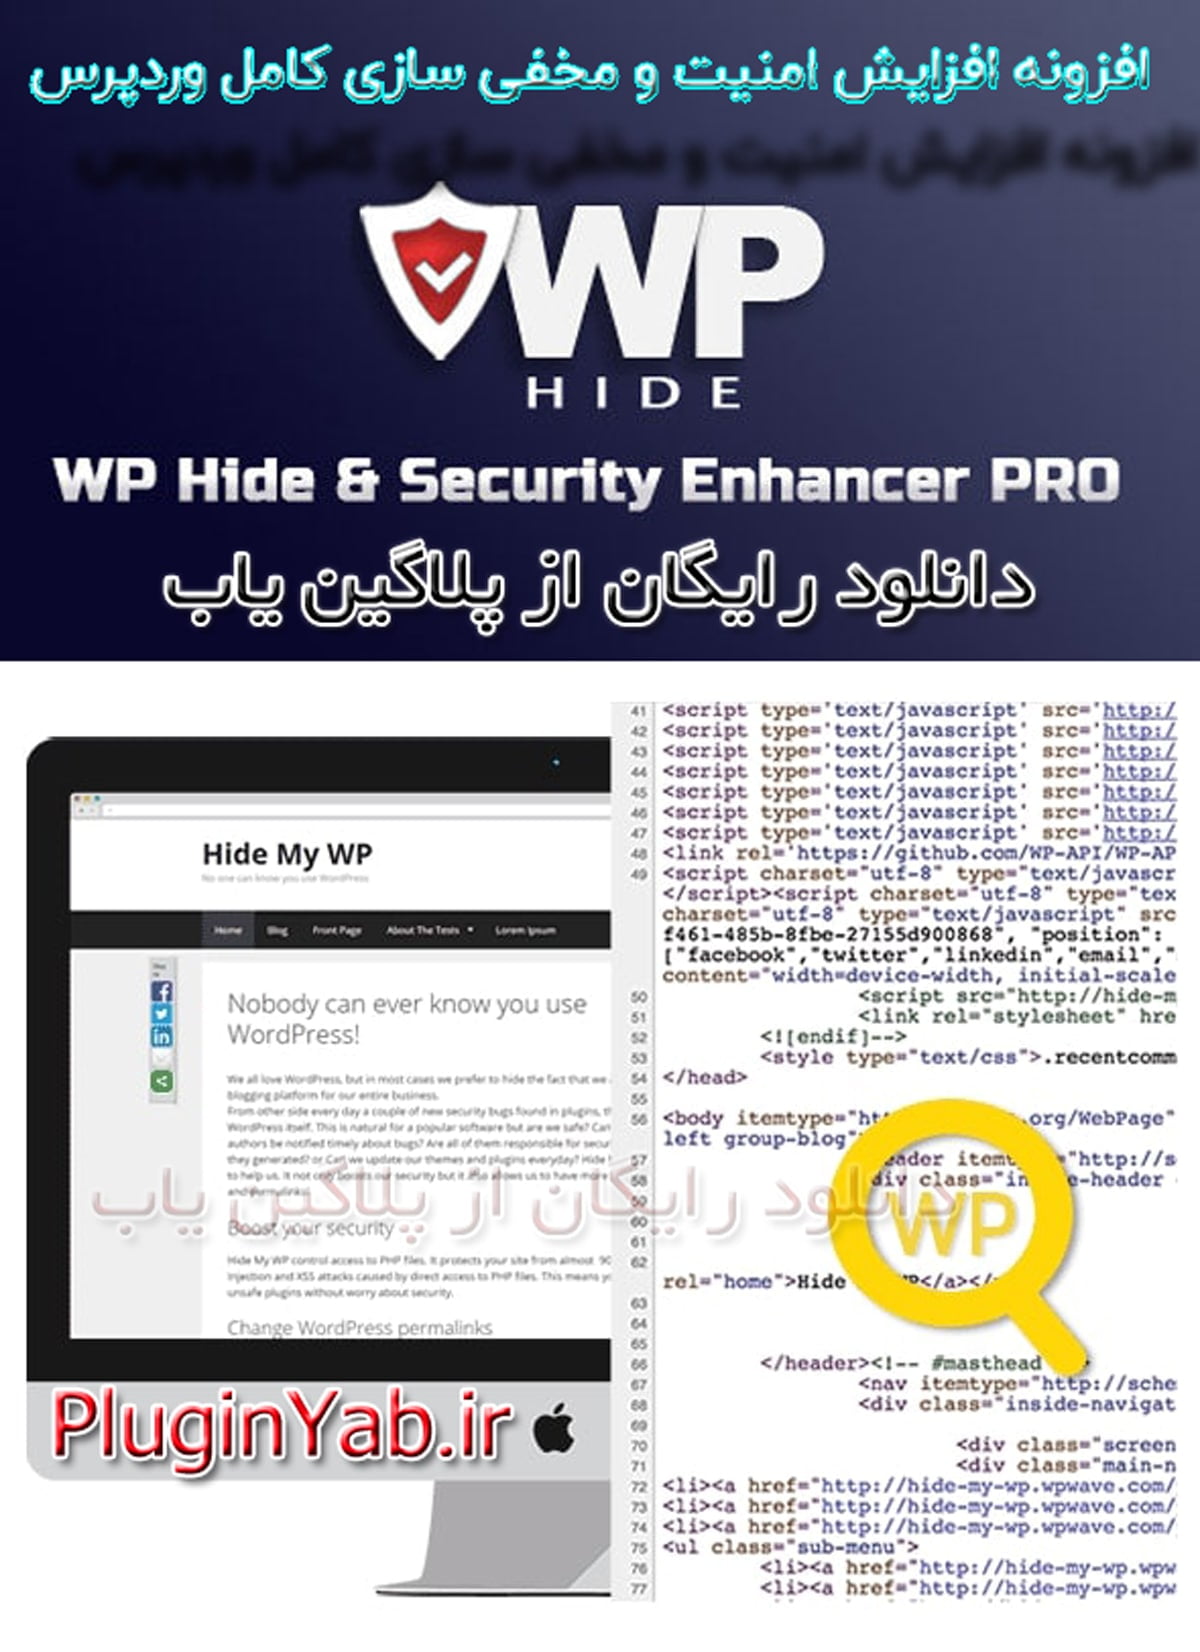 دانلود رایگان افزونه WP Hide Pro مخفی ساز وردپرس بروز اورجینال لایسنس نامحدود